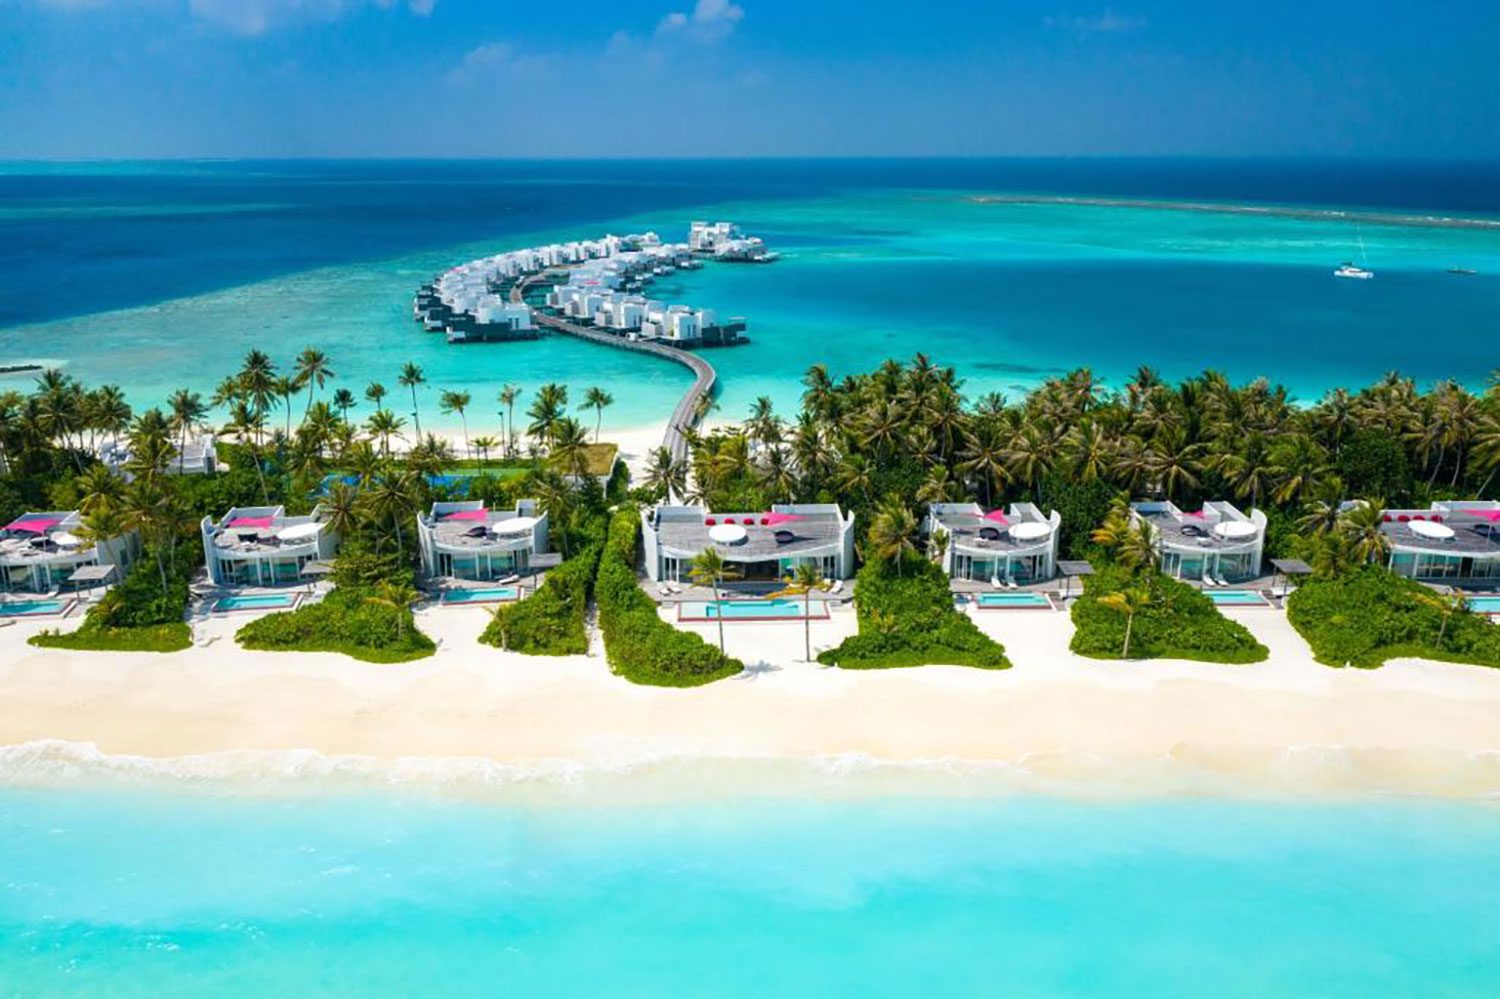 Jumeirah-Maldives